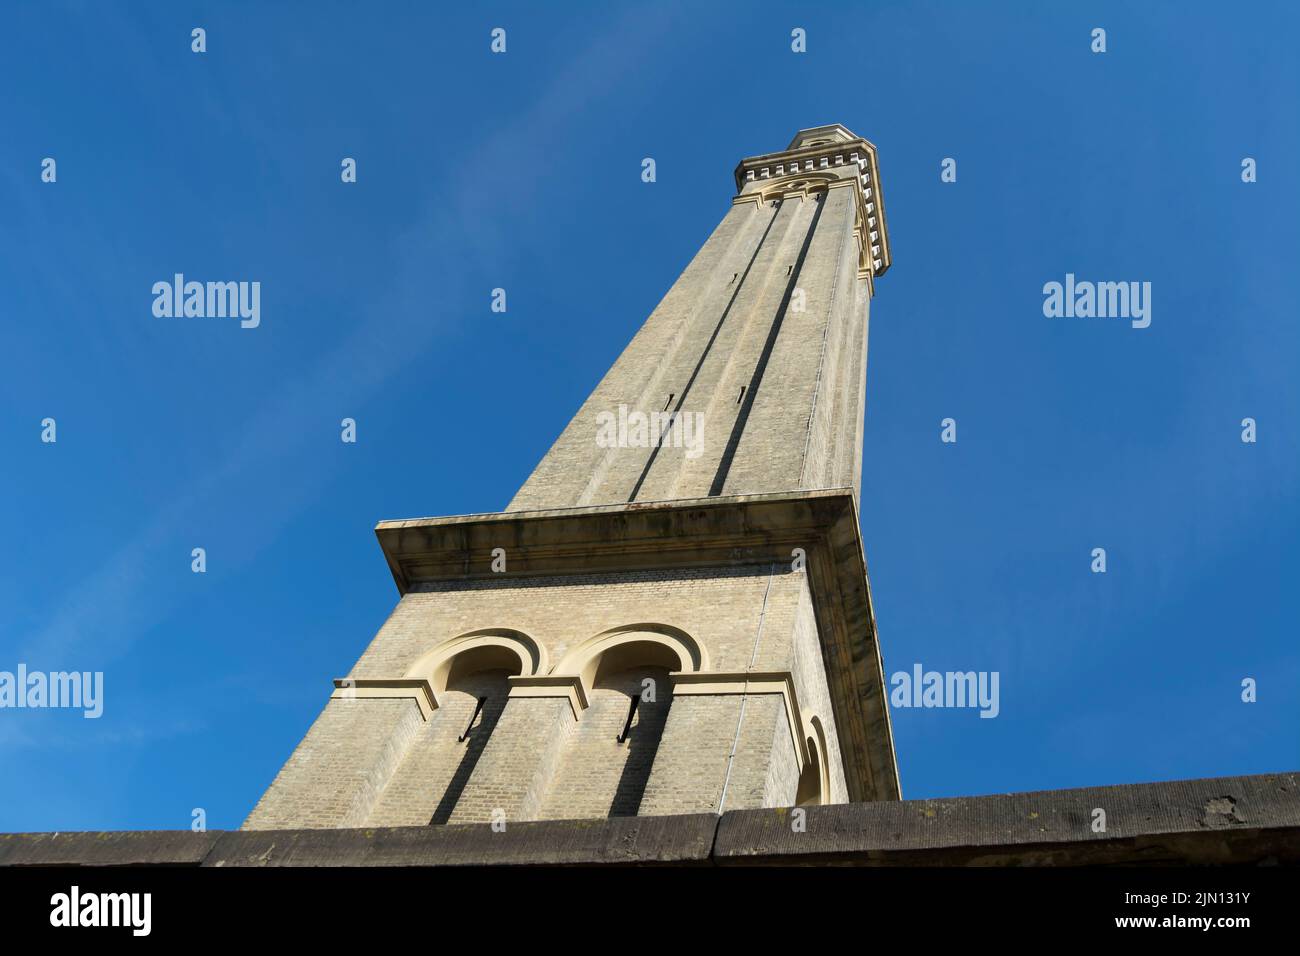 la torre de presión de agua del siglo 19th de 60 metros de altura que ahora forma parte del museo de agua y vapor de londres, brentford, londres, inglaterra Foto de stock